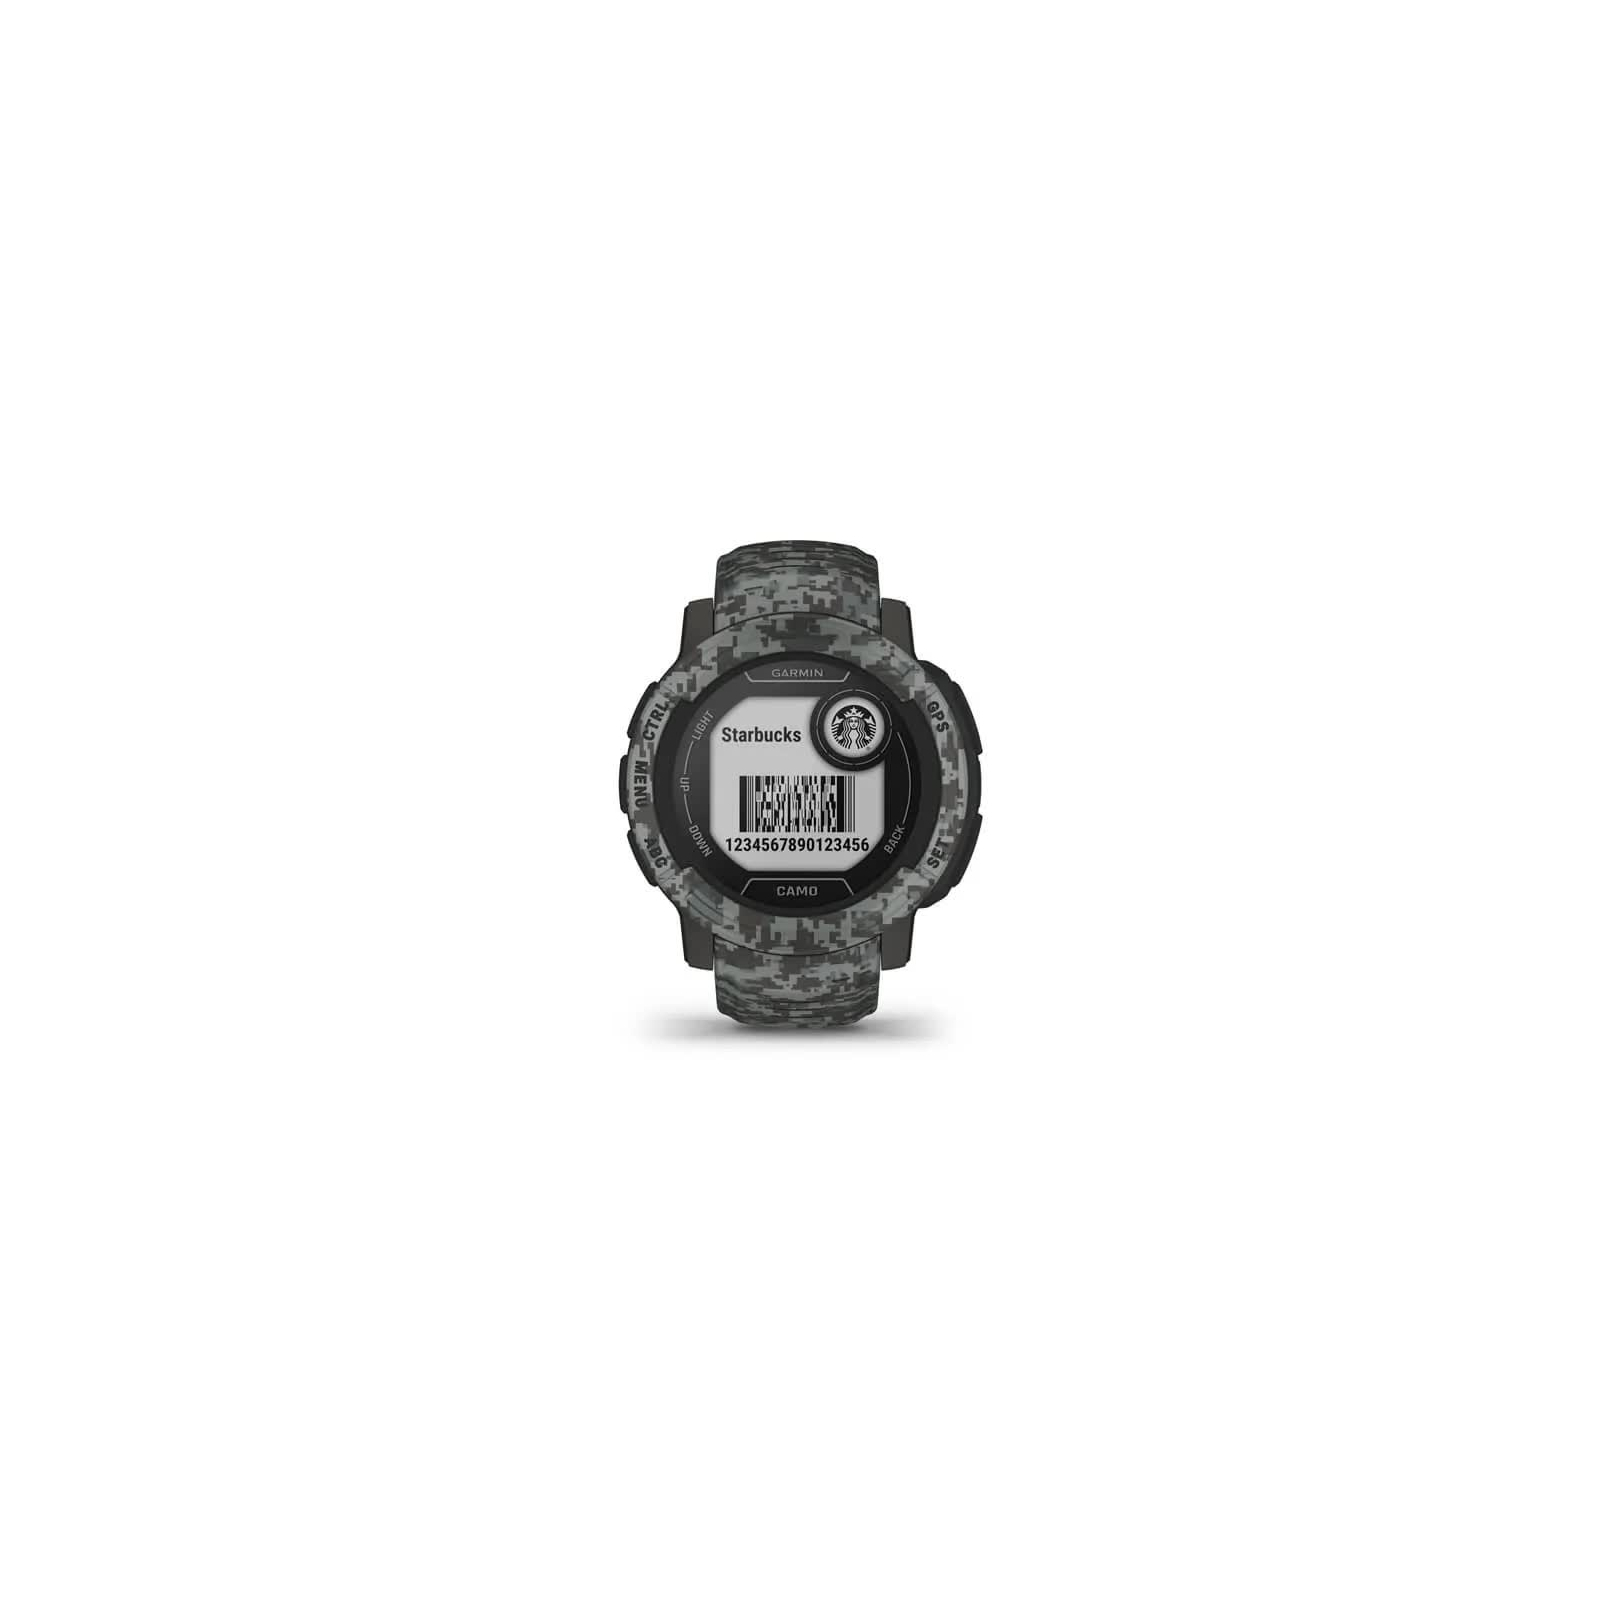 Смарт-часы Garmin Instinct 2, Camo Edition, Graphite Camo, GPS (010-02626-03) изображение 4